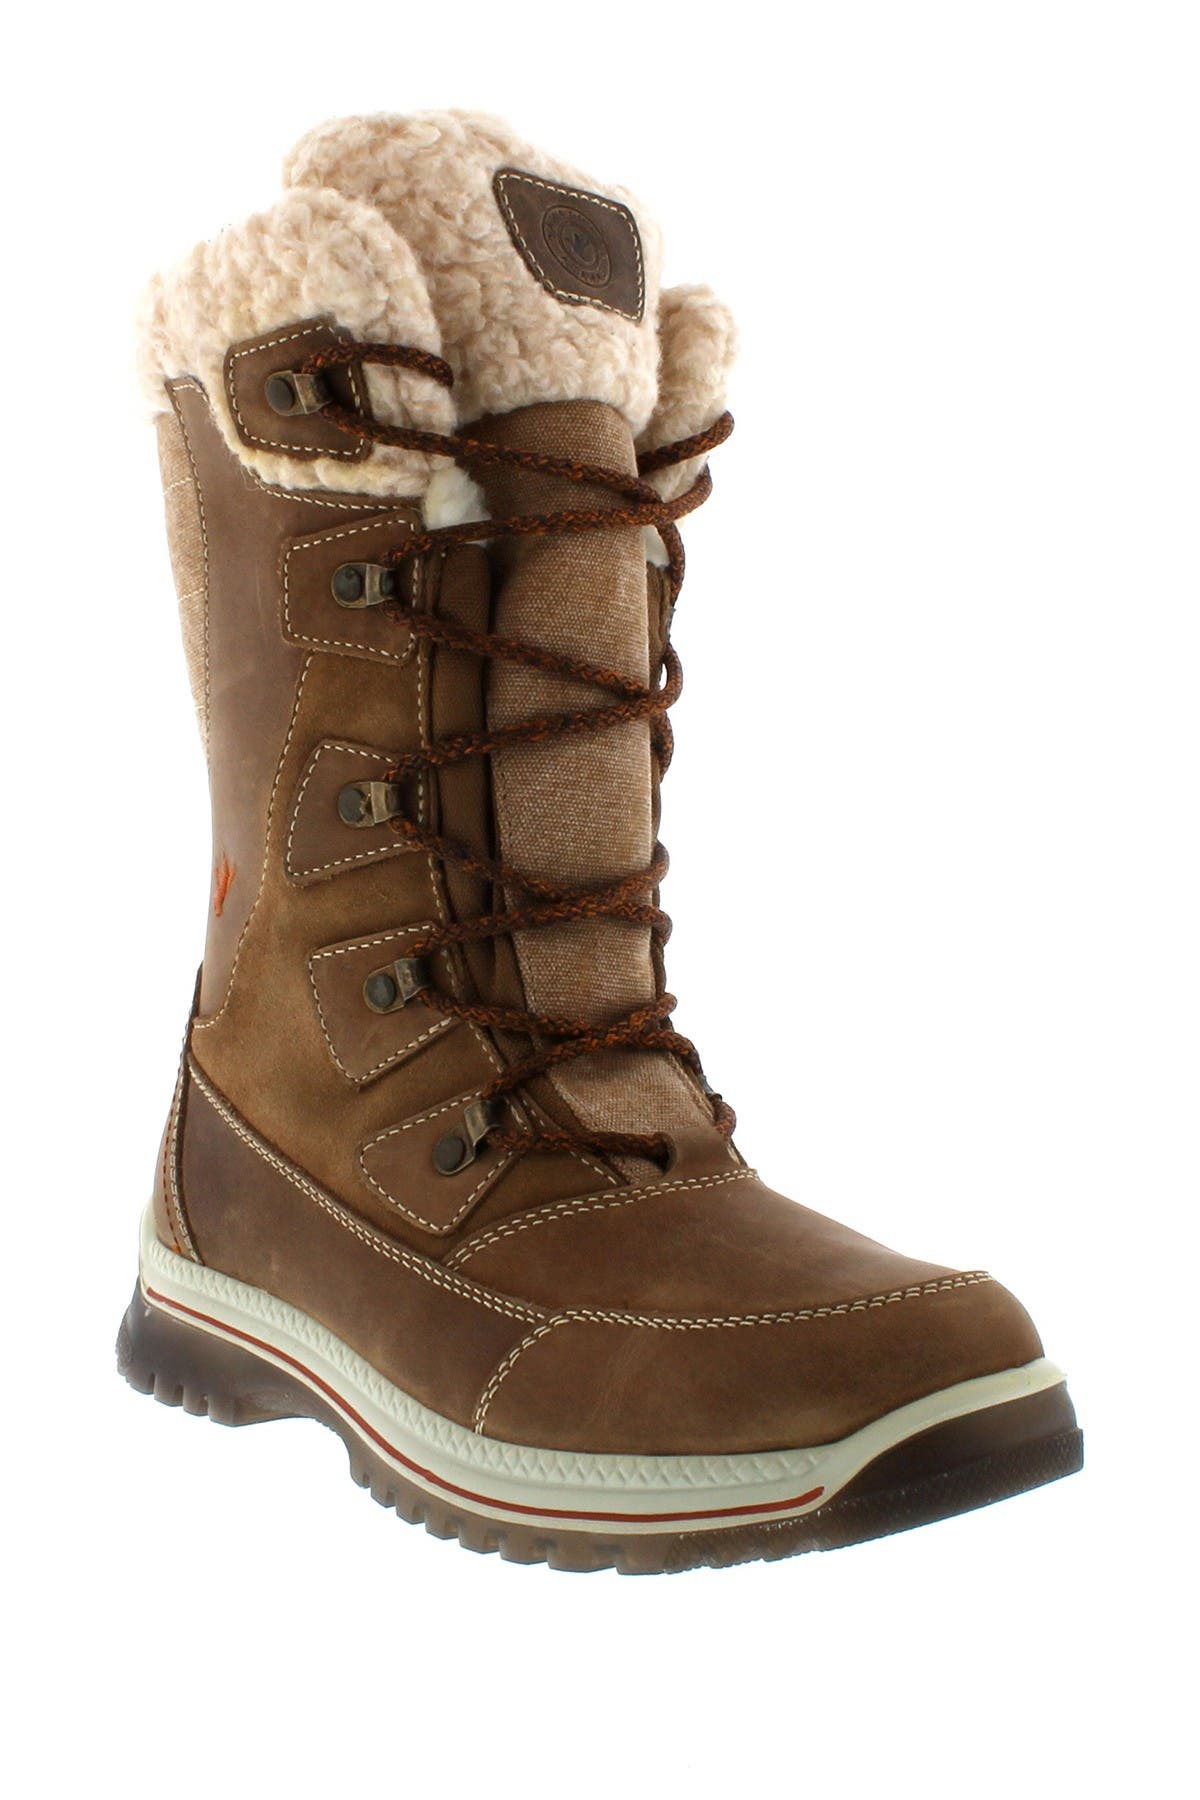 wool lined waterproof boots